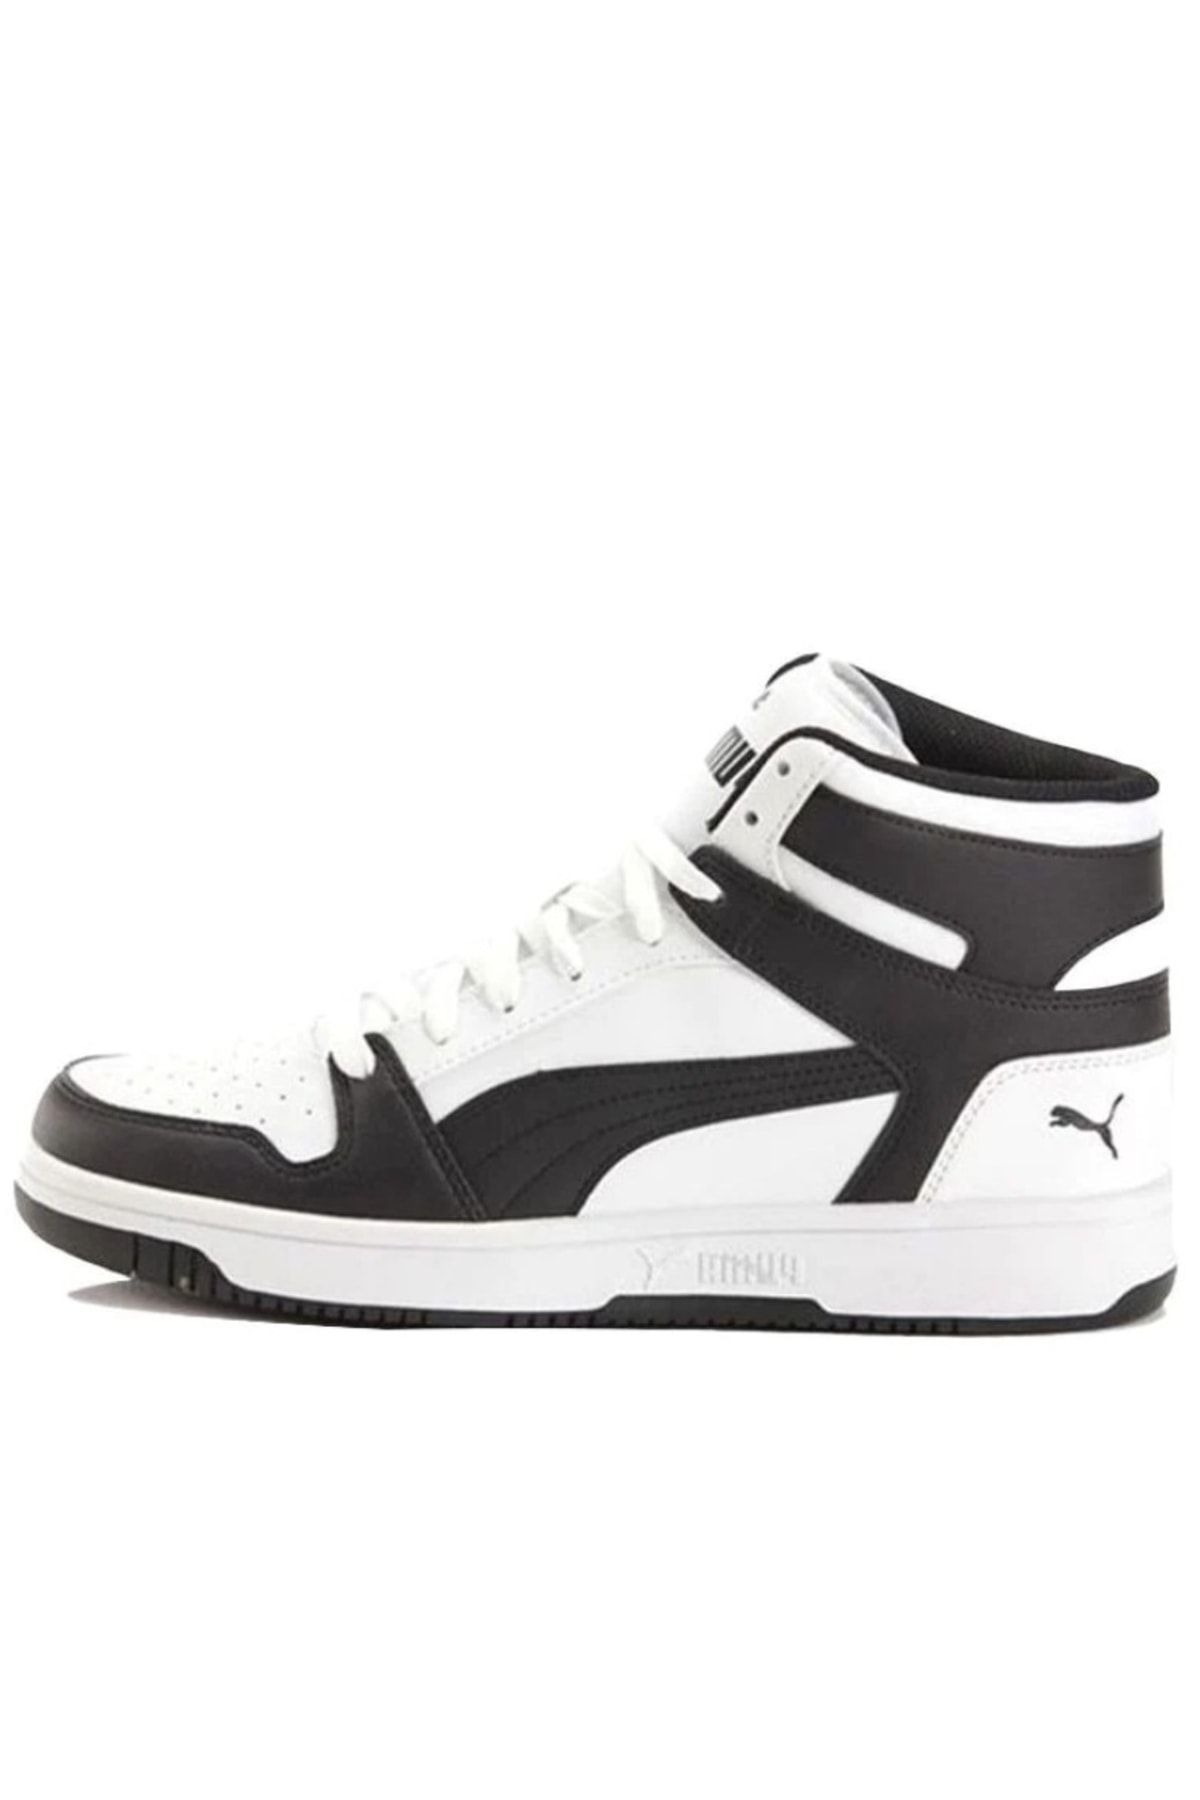 Puma Rebound Layup White/black Basketbol Ve Unisex Günlük Ayakkabı